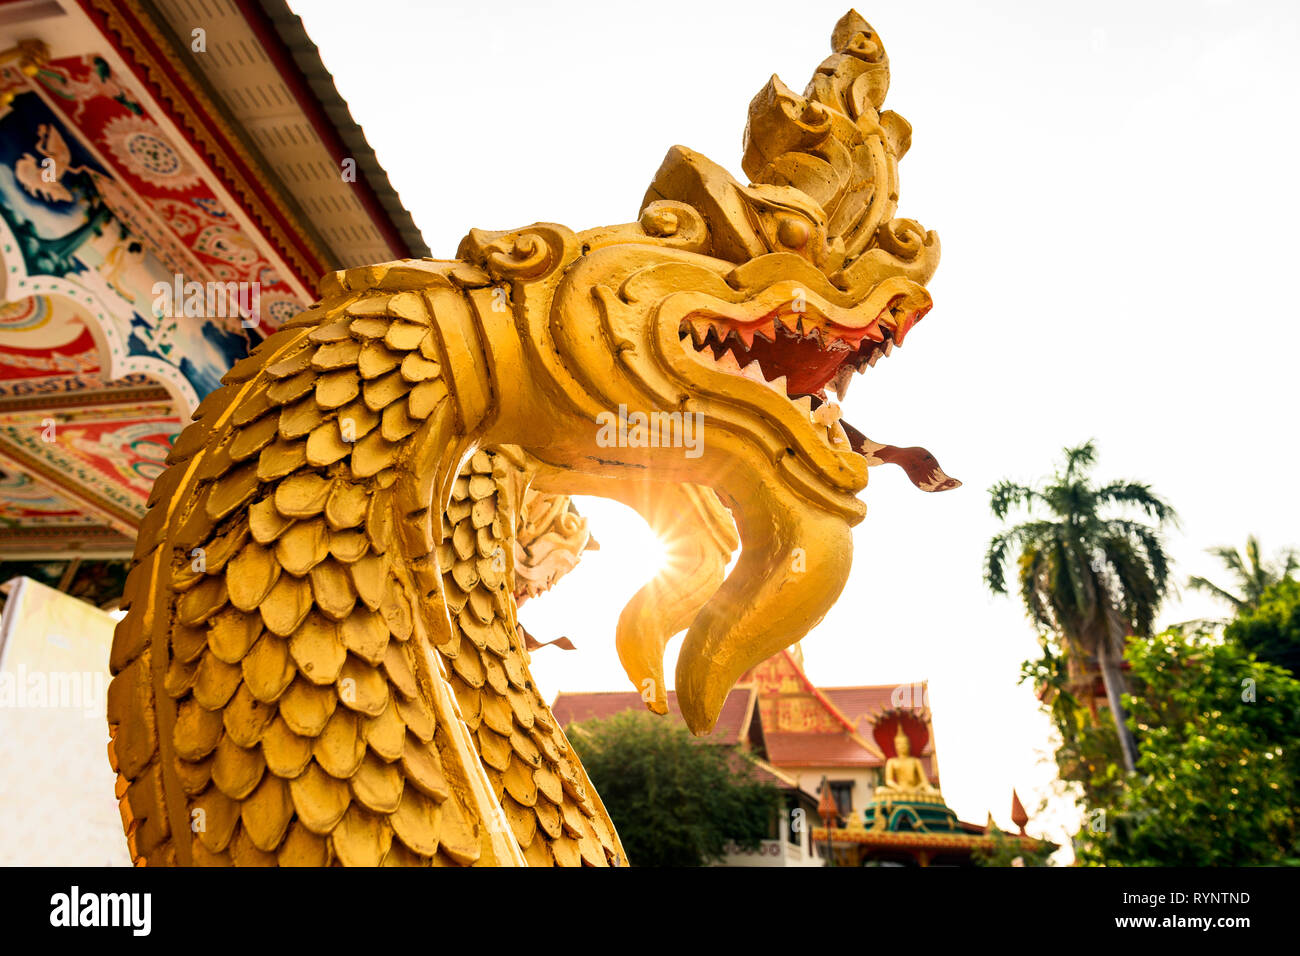 Einen atemberaubenden Blick auf einen wunderschönen Gold - überdachte Naga (Schlange Menschen) vor der Wat That Luang Tai während des Sonnenuntergangs. Vientiane, Laos. Nagas sind mythische se Stockfoto